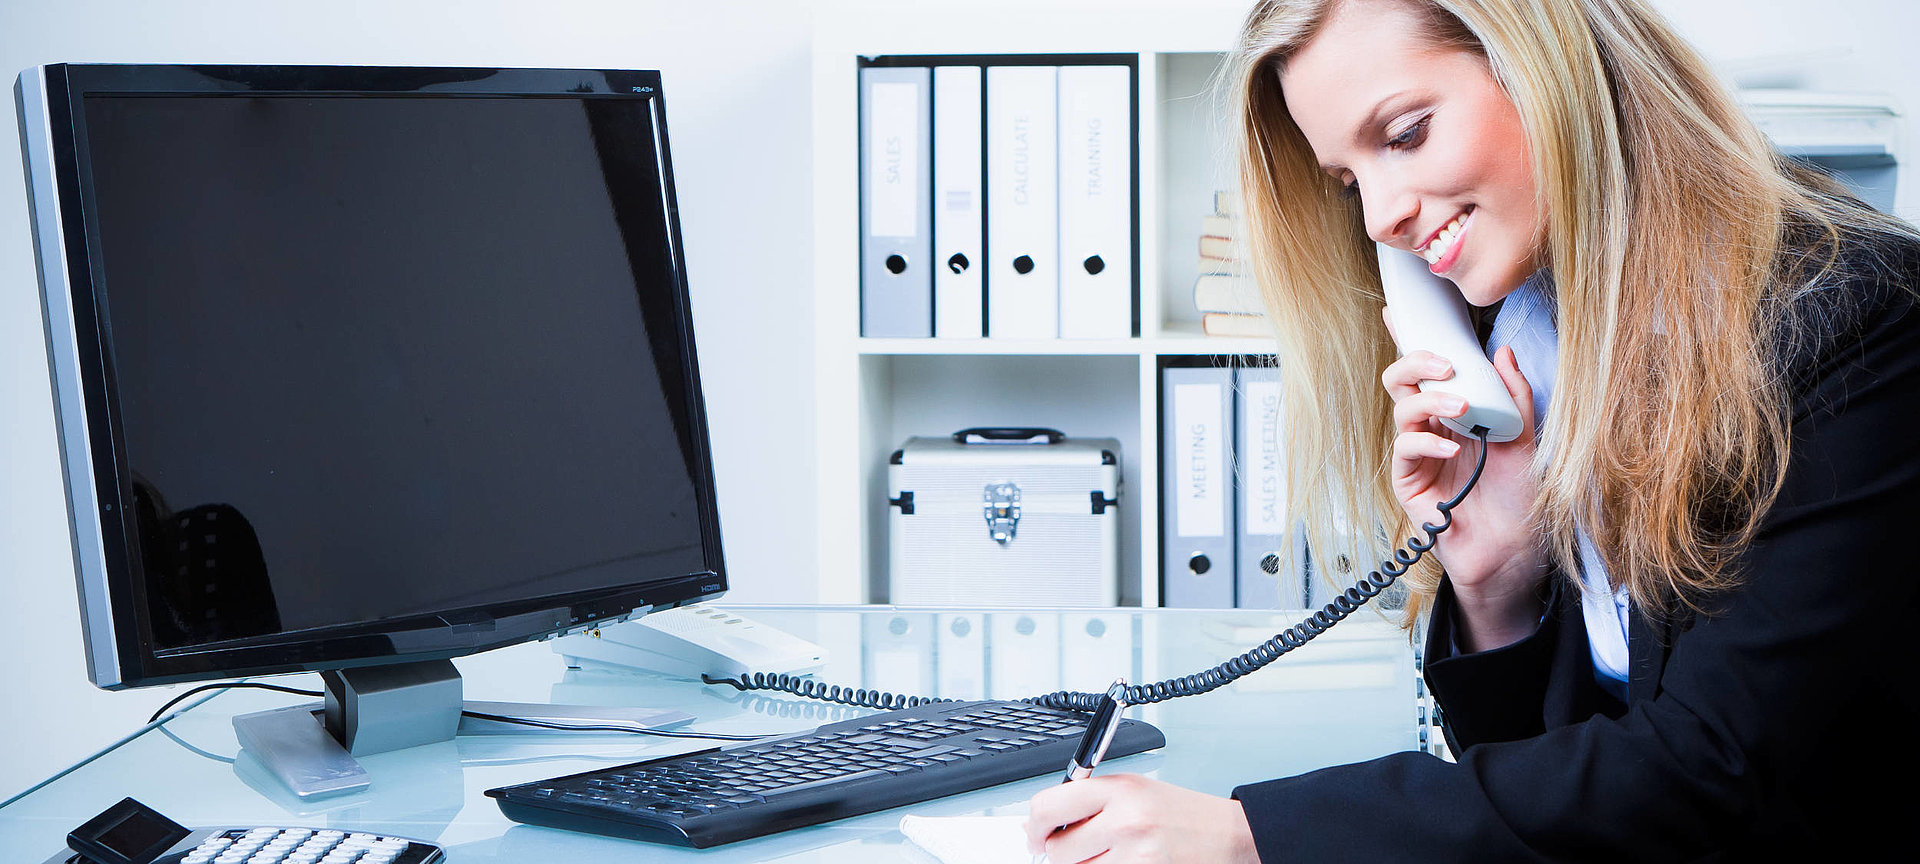 Das Bild ist das Übersichtsbild des Ausbildungsbereichs Verwaltung. Es zeigt eine junge Dame mit langen blonden Haaren, die an ihrem Schreibtisch sitzt und telefoniert. 